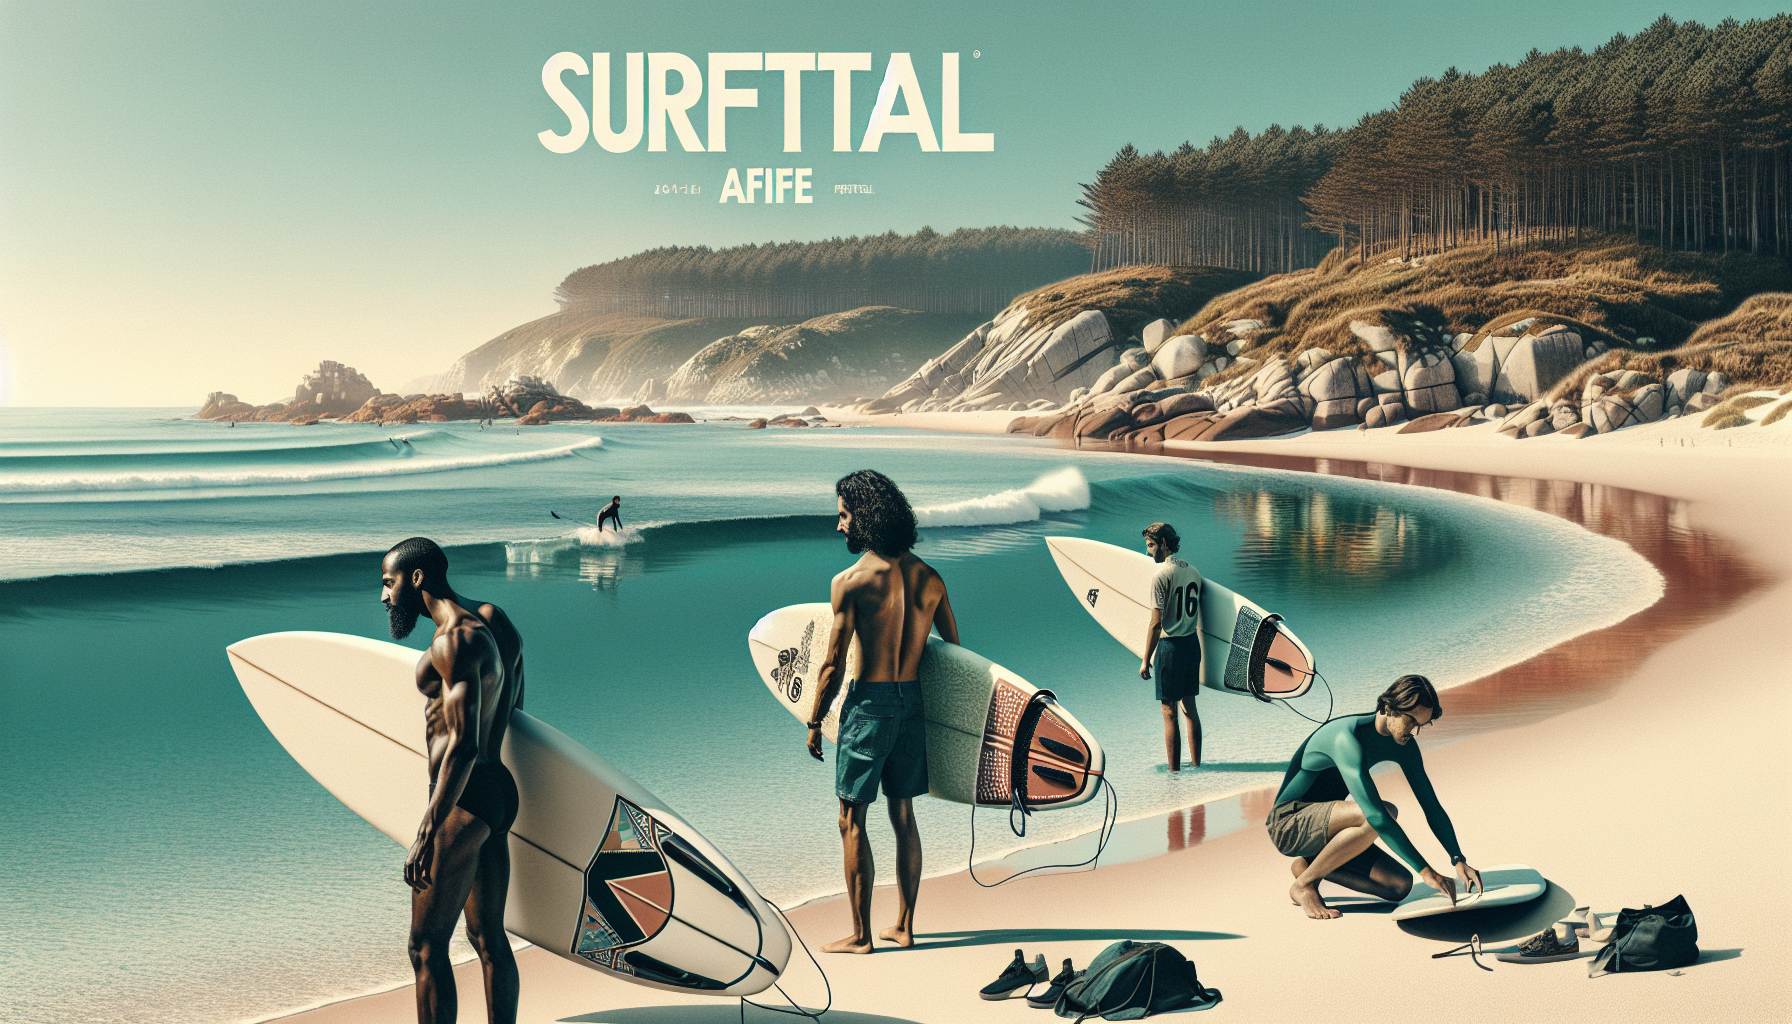 SurfTotal em Afife: Guia Completo para Dominar as Ondas do Paraíso Surfista